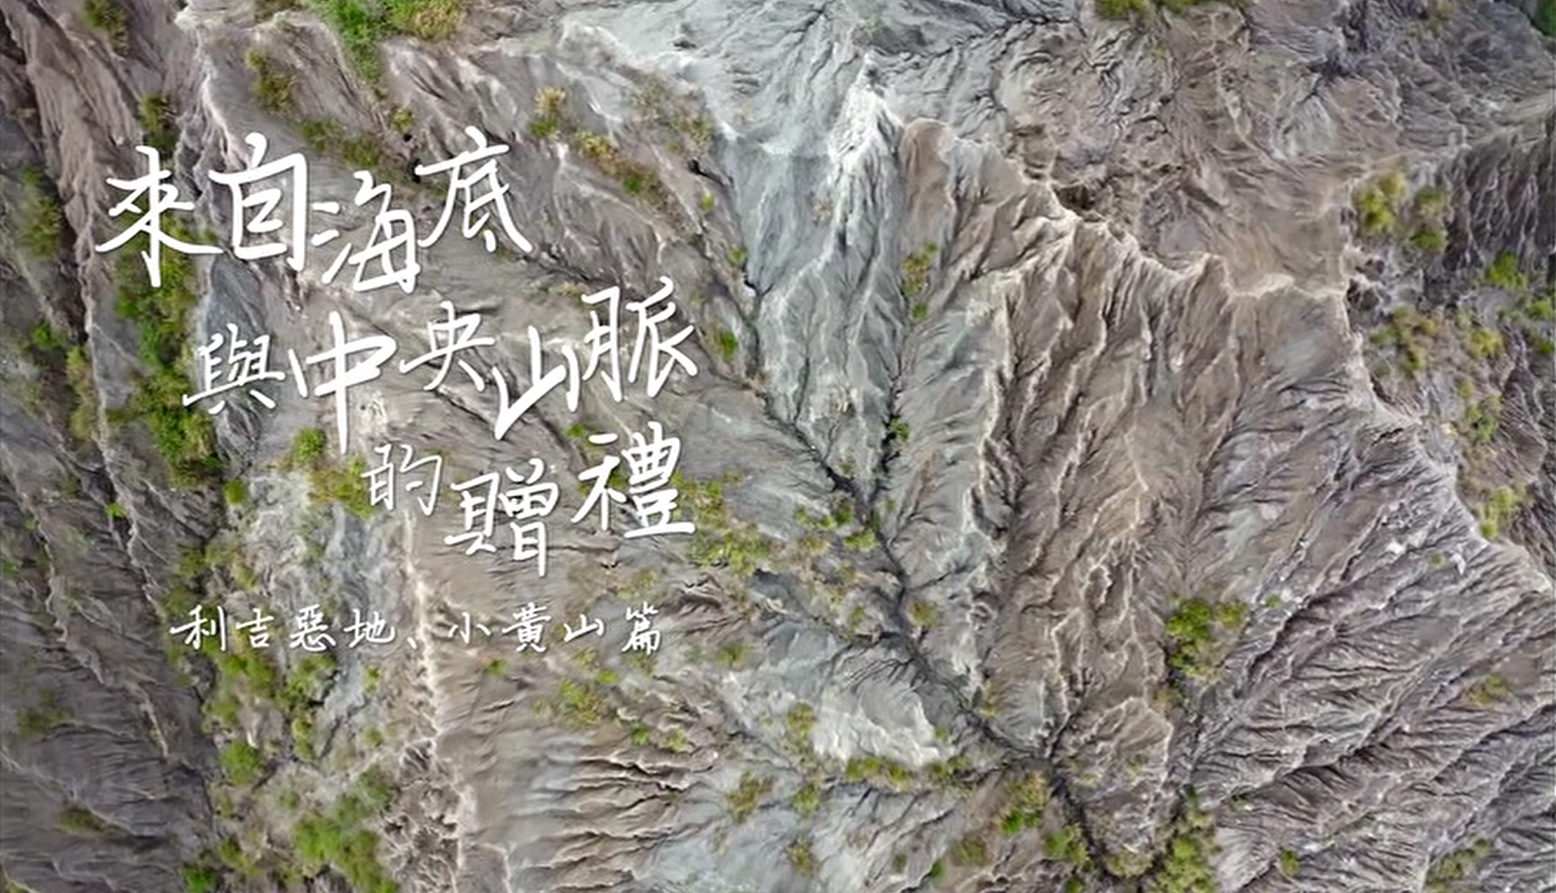 花東縱谷地質地景觀光宣傳影片：來自海底與中央山脈的贈禮─利吉惡地、小黃山篇 (中文)